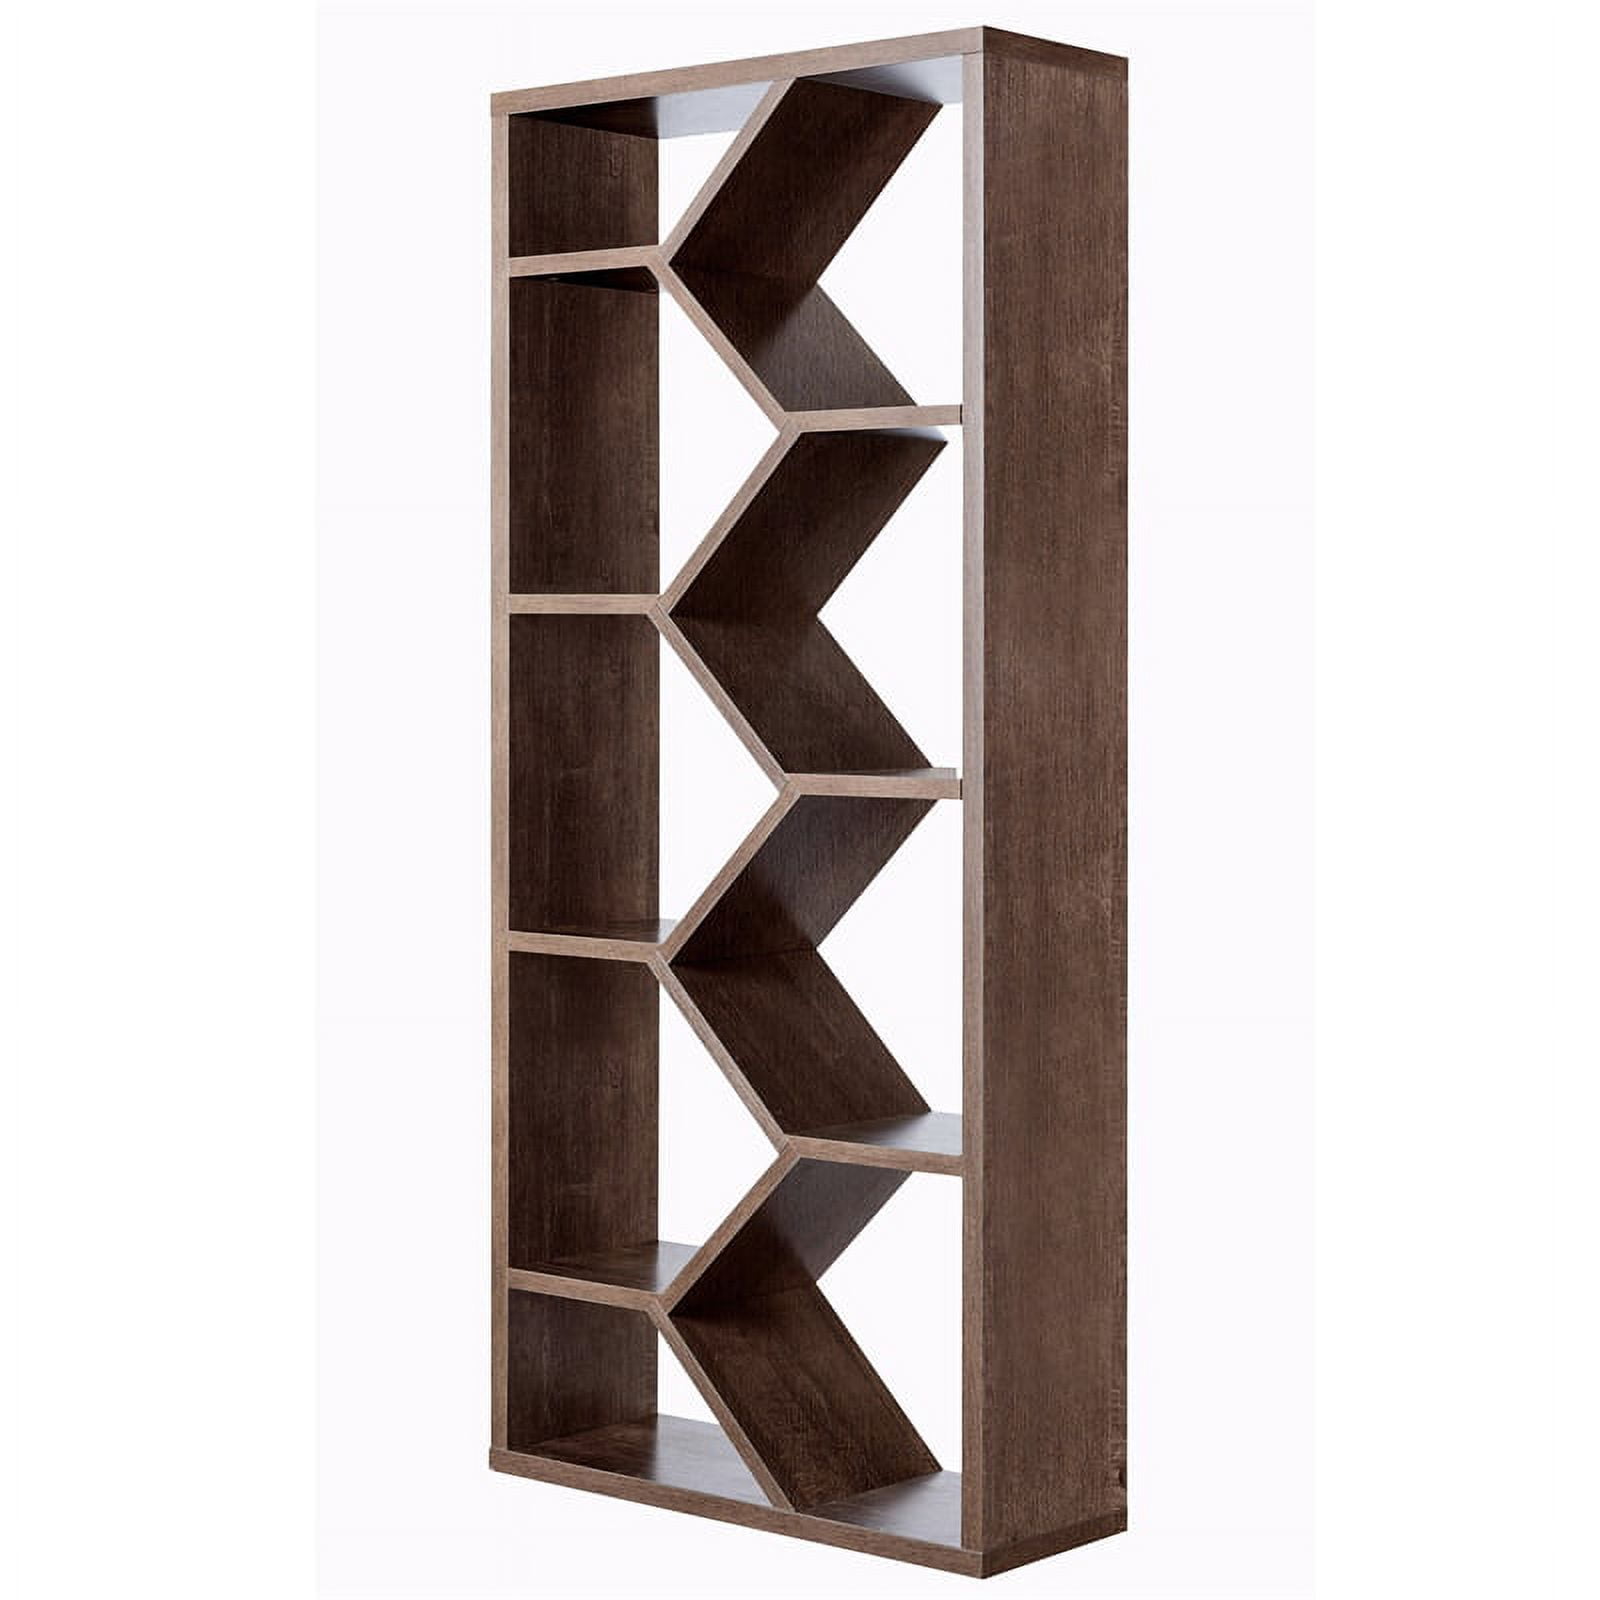 Solid wood cube shelves in walnut or oak - Nick James Design